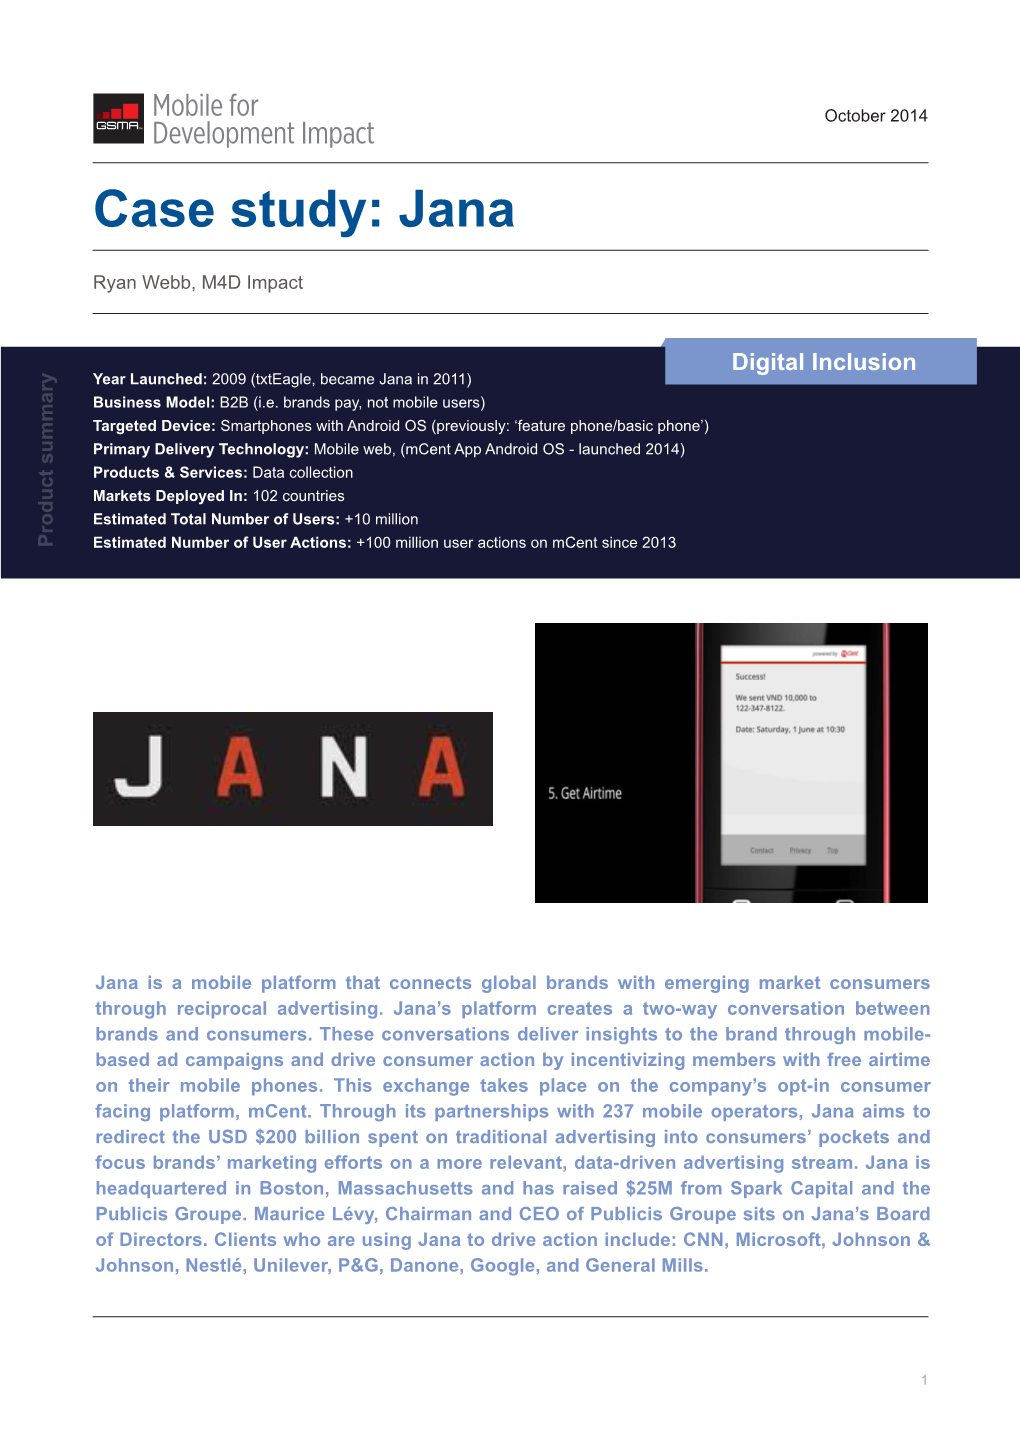 Case Study: Jana